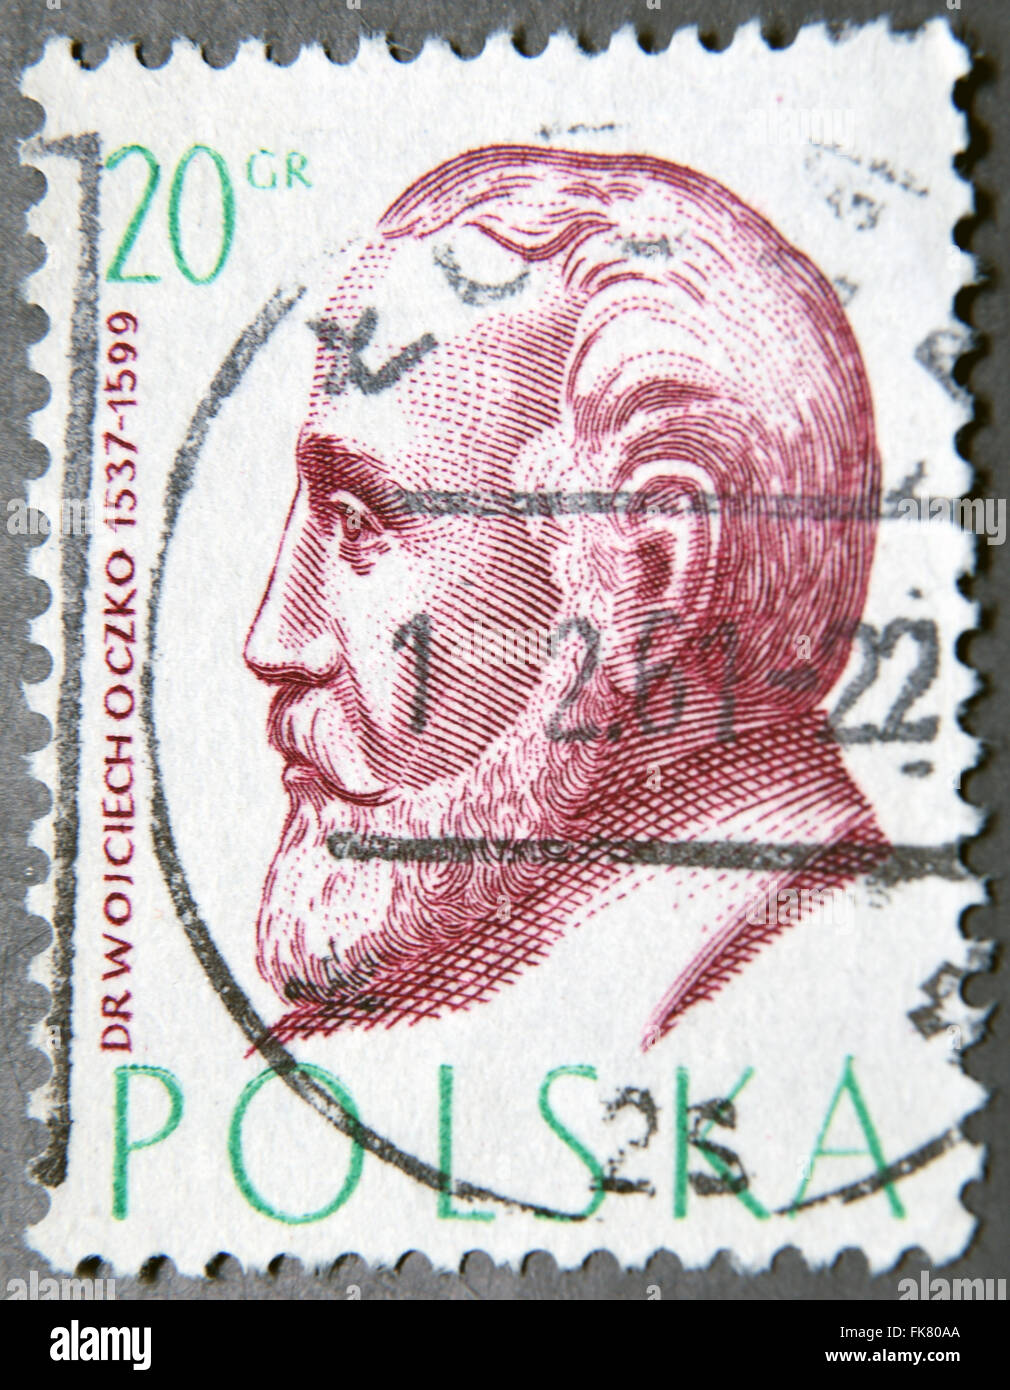 Pologne - VERS 1957 : un timbre-poste de la Pologne montre Wojciech Oczko, philosophe et médecin Banque D'Images